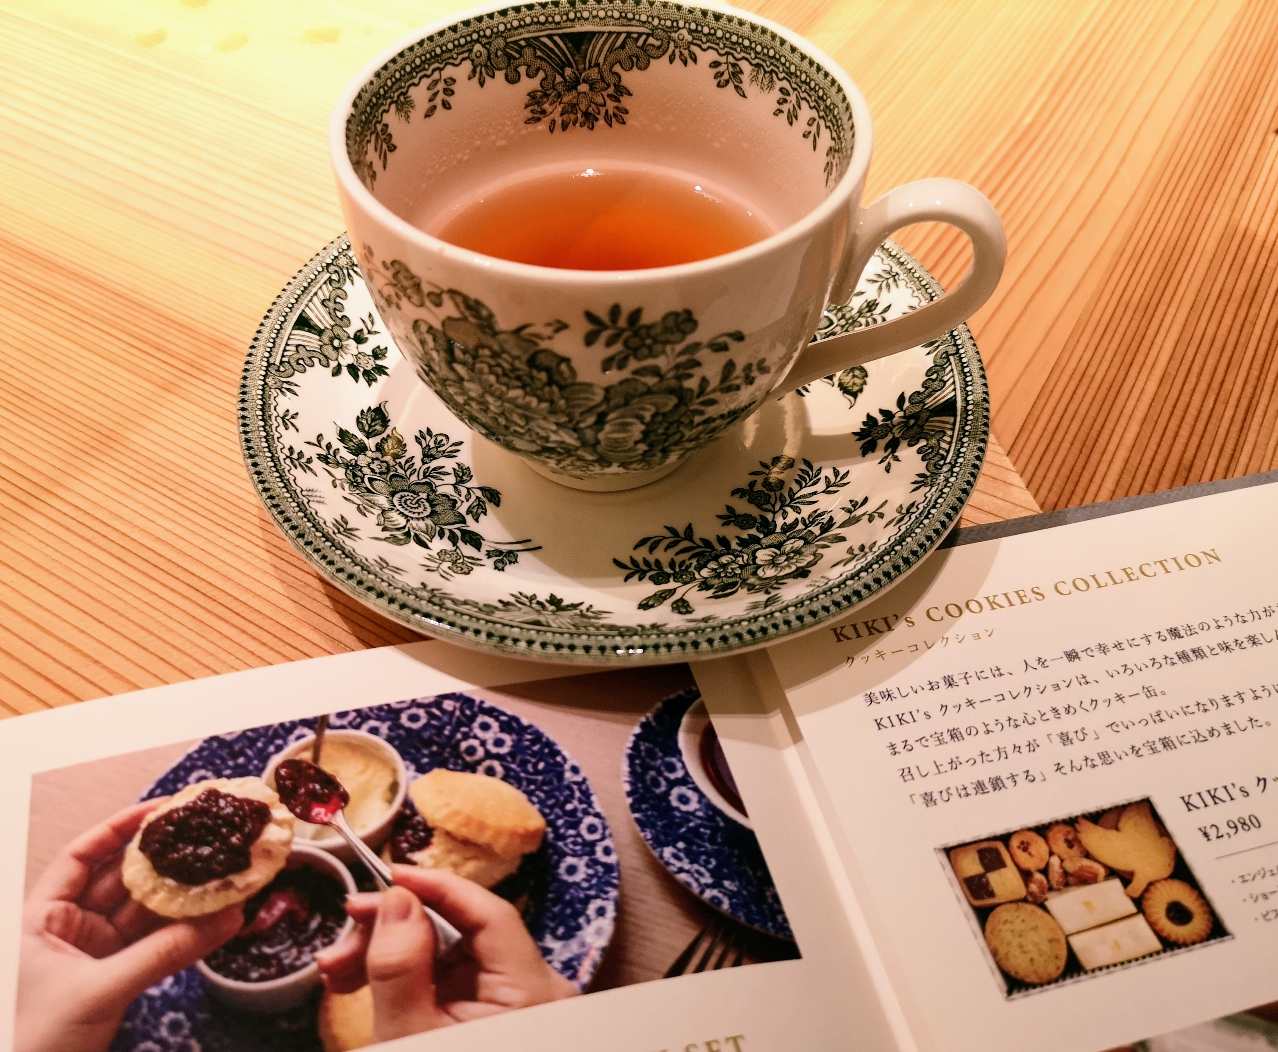 京都で話題の紅茶とスコーンの専門店「TEA ROOM KIKI」が日比谷に開店【実食レポ】 | TABIZINE～人生に旅心を～